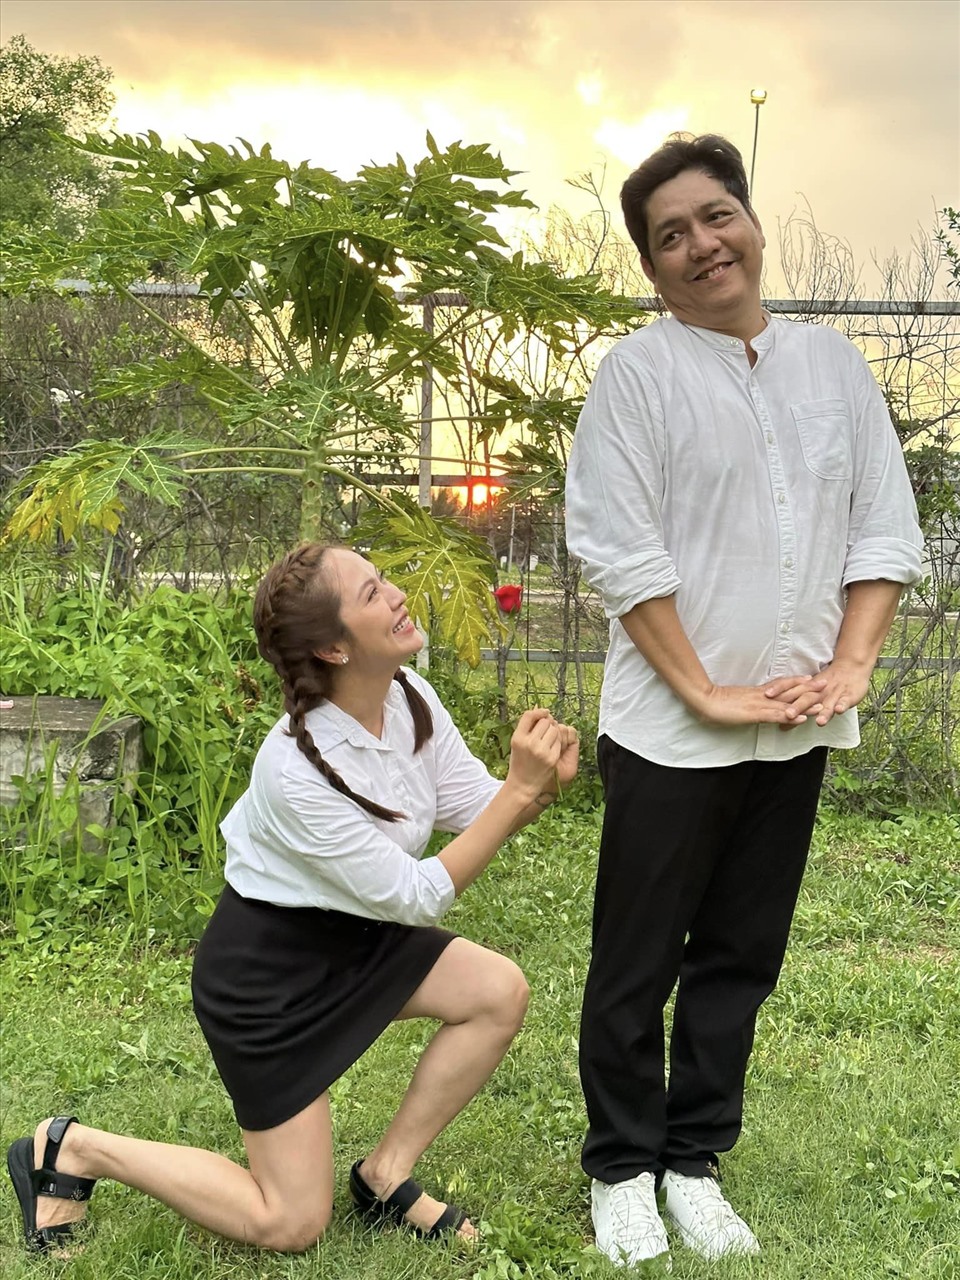 Thanh Thúy tái hiện cảnh cầu hôn Đức Thịnh. Ảnh: Fanpage Thanh Thúy - Đức Thịnh